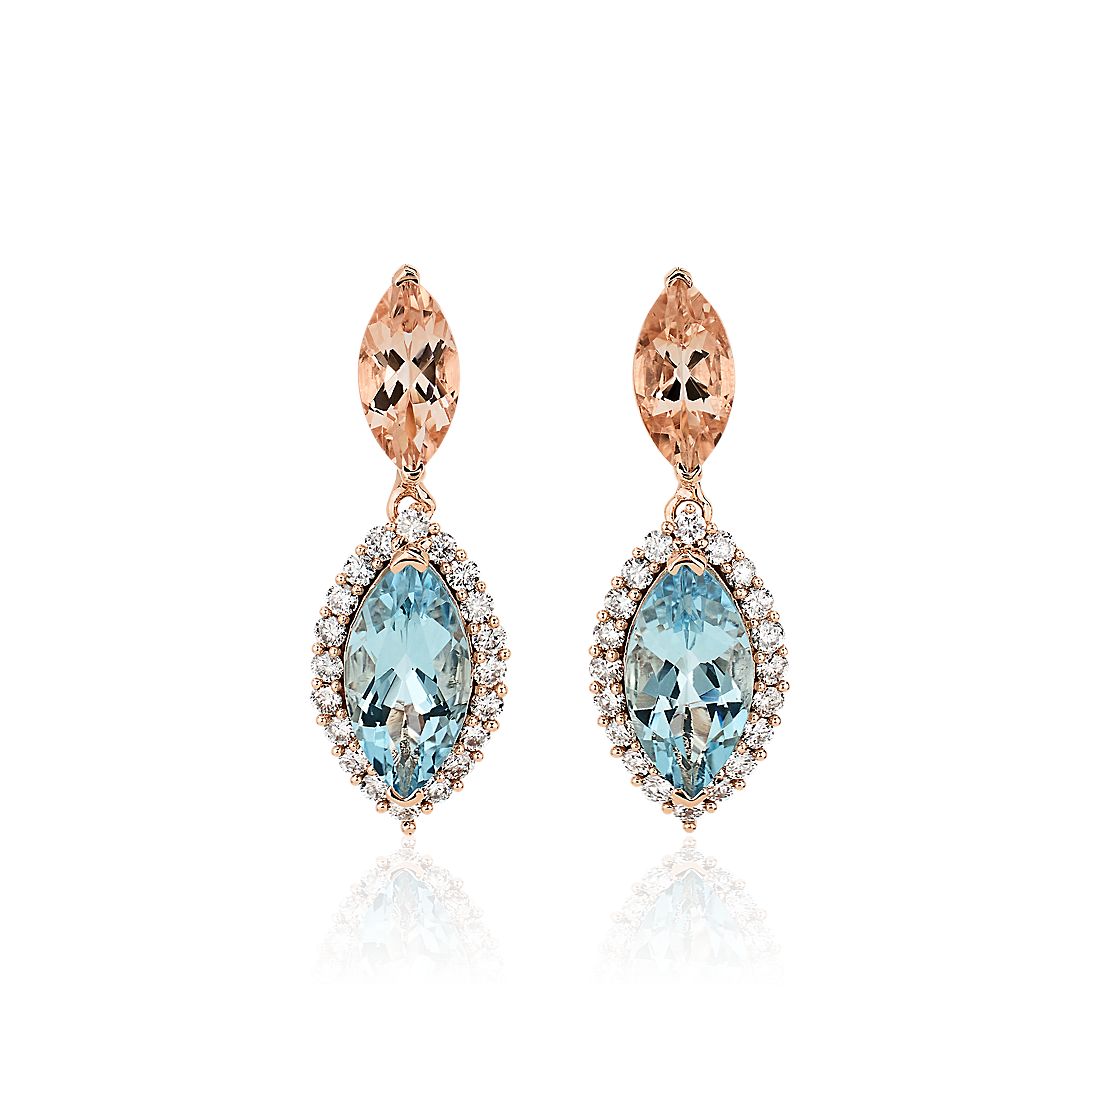 Morganite, Aquamarine and Diamond Drop Earrings in 14k Rose Gold